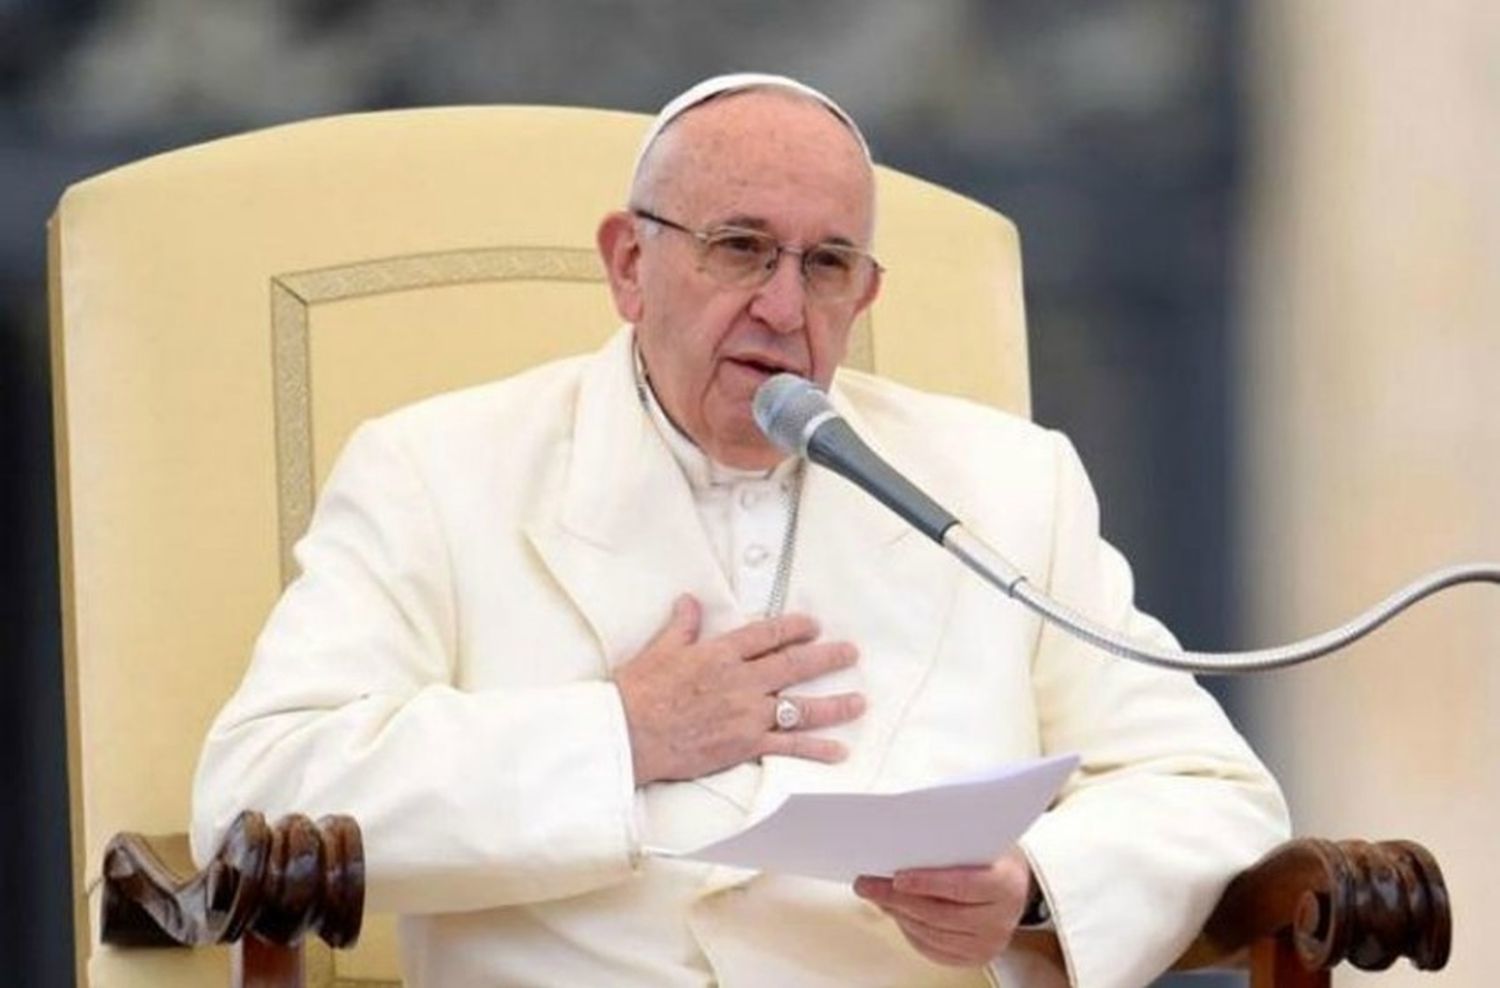 El Papa Francisco confirmó que no visitará Argentina el próximo año